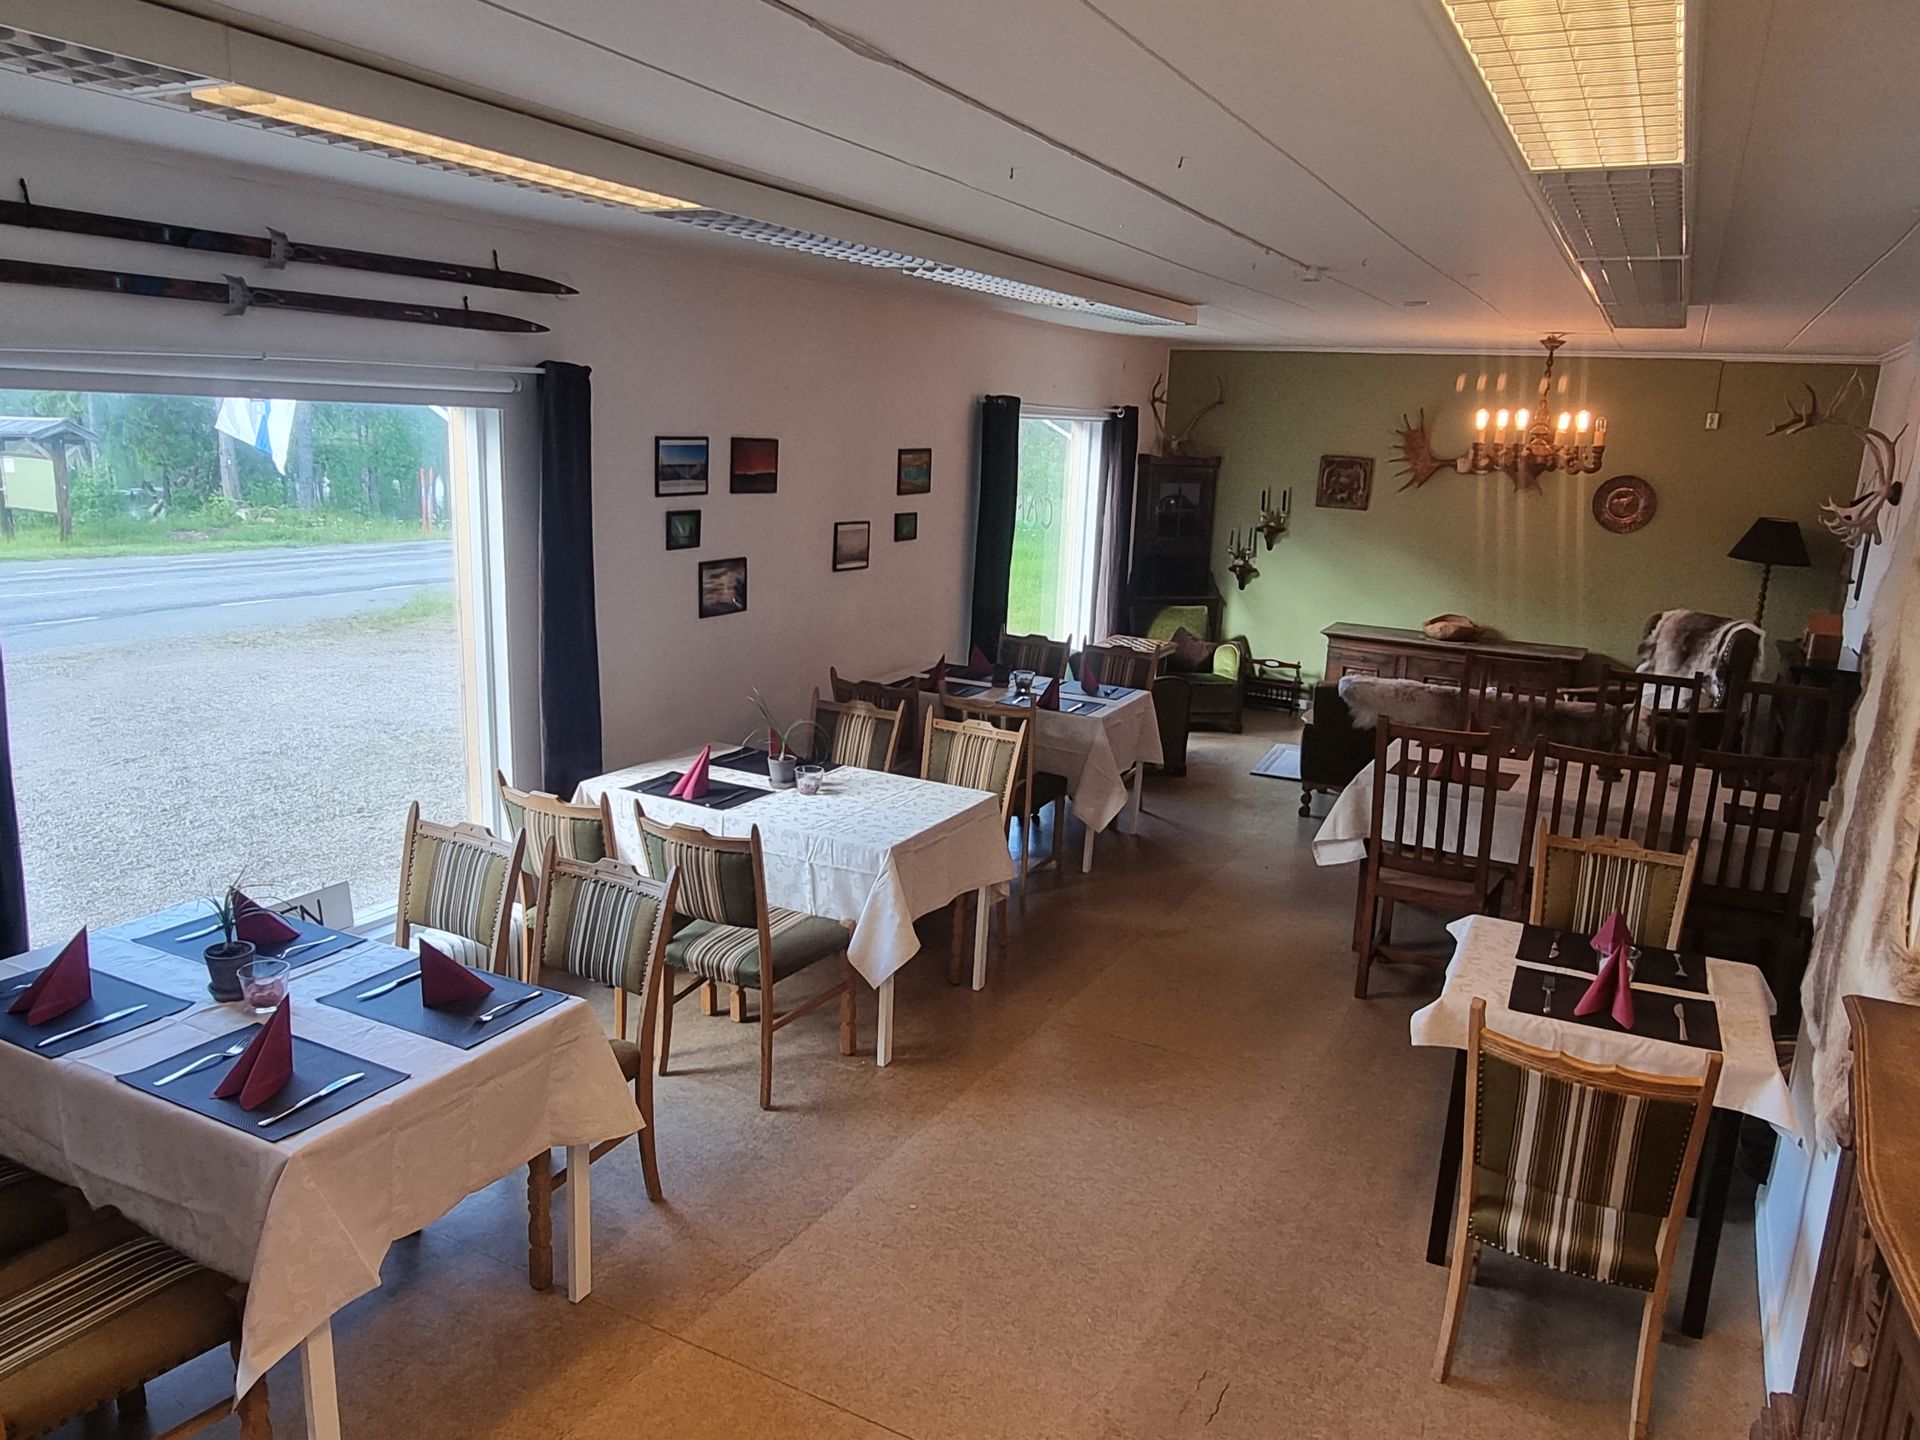 Café in Swedish Lapland